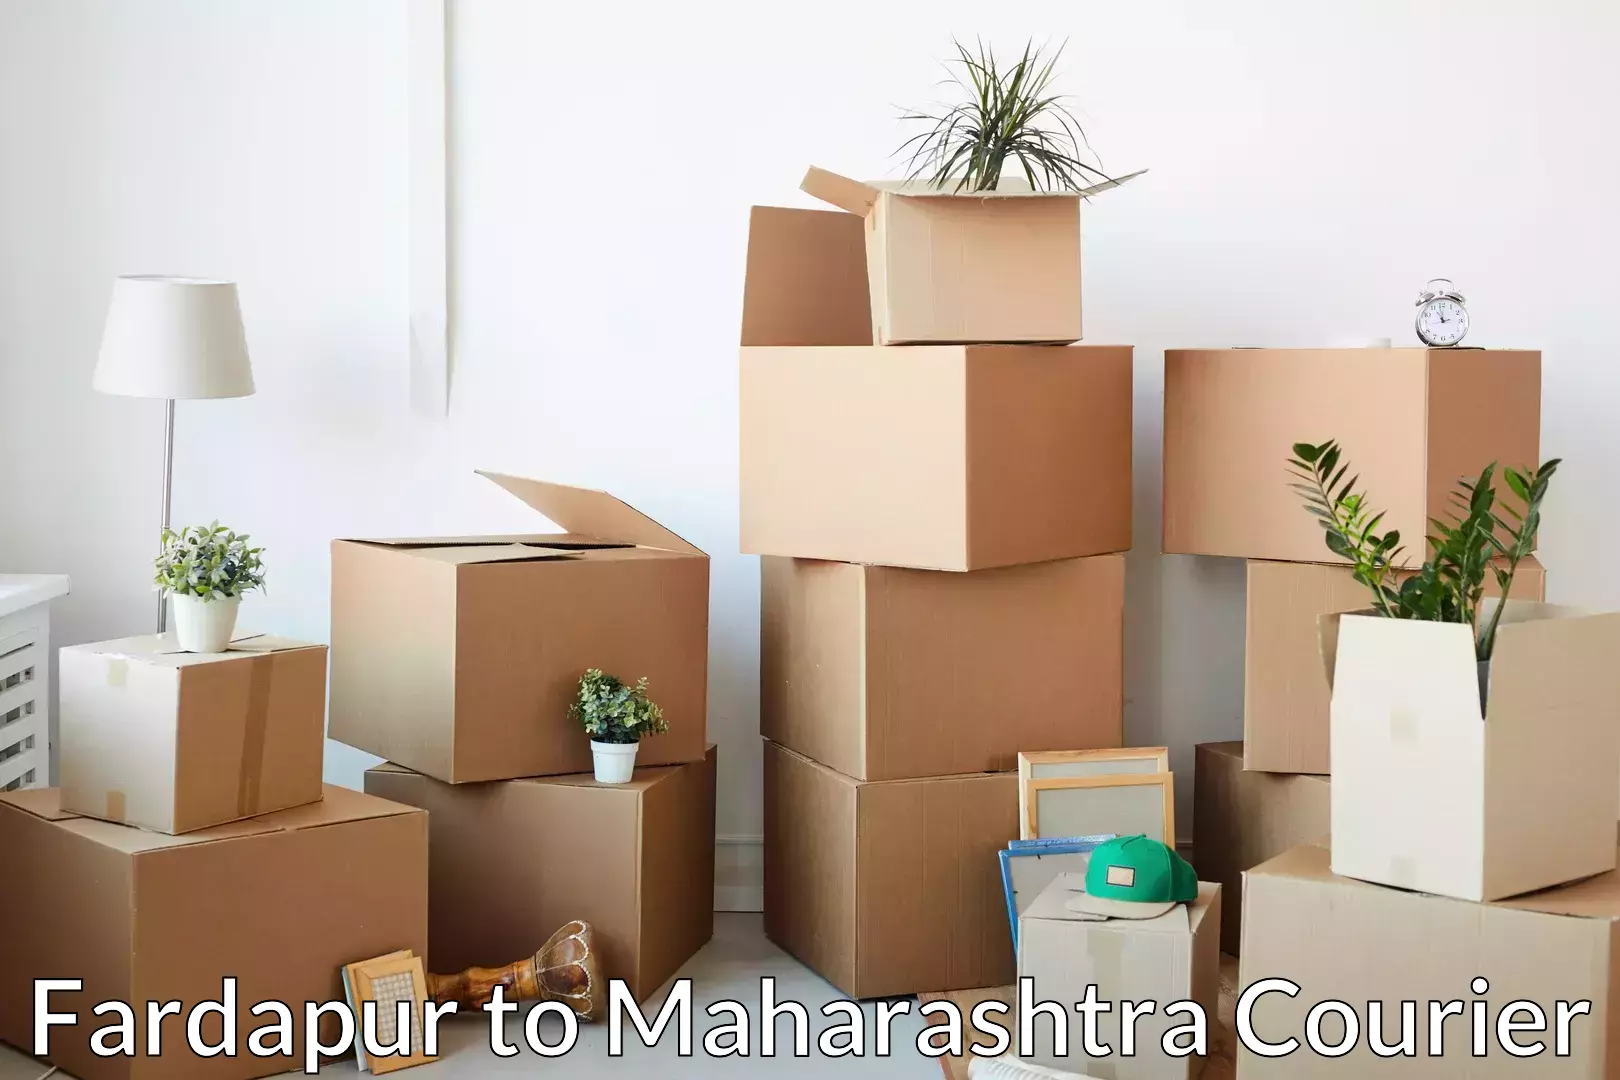 Home goods moving company Fardapur to Gadhinglaj